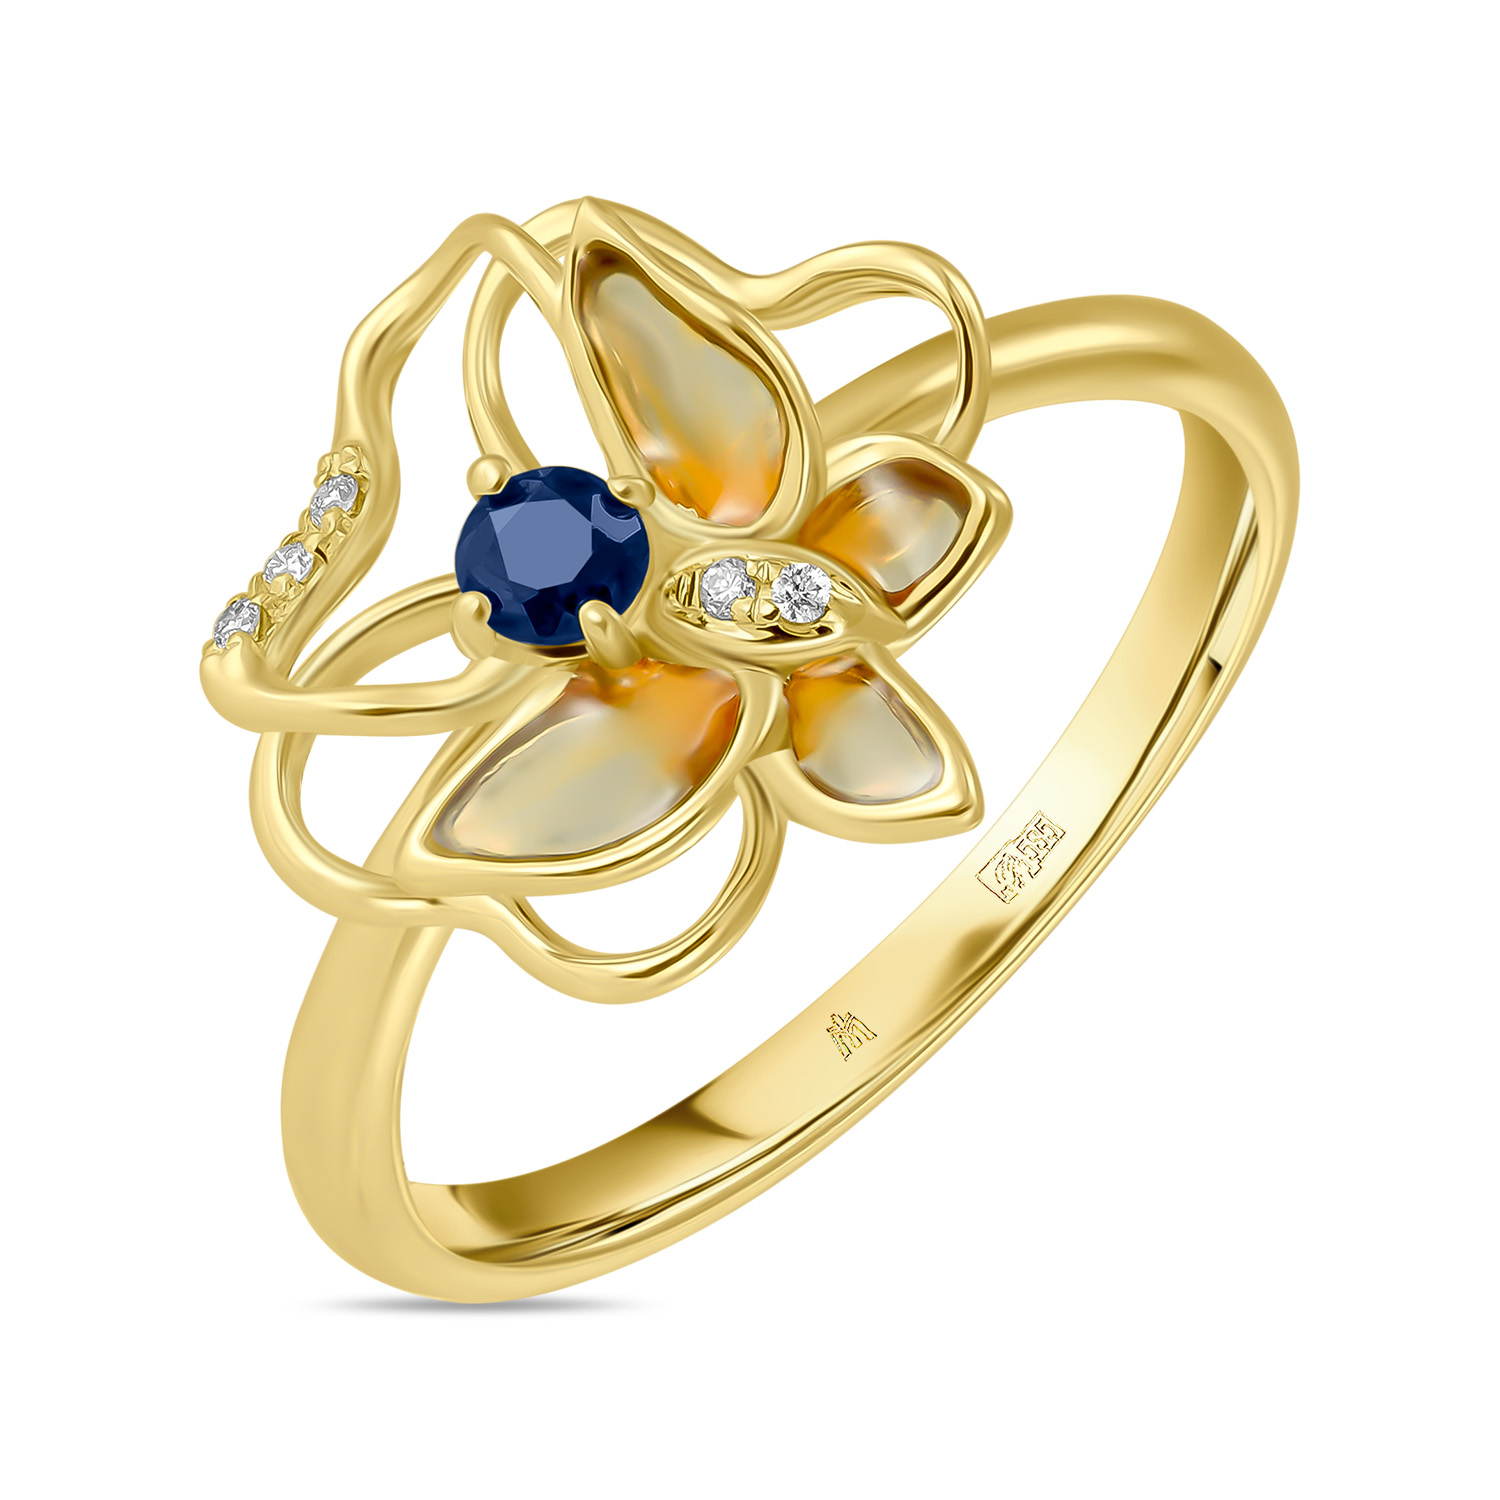 Кольца МЮЗ Золотое кольцо с бриллиантами, эмалью и сапфиром кольца мюз золотое кольцо с цитрином бриллиантами и эмалью